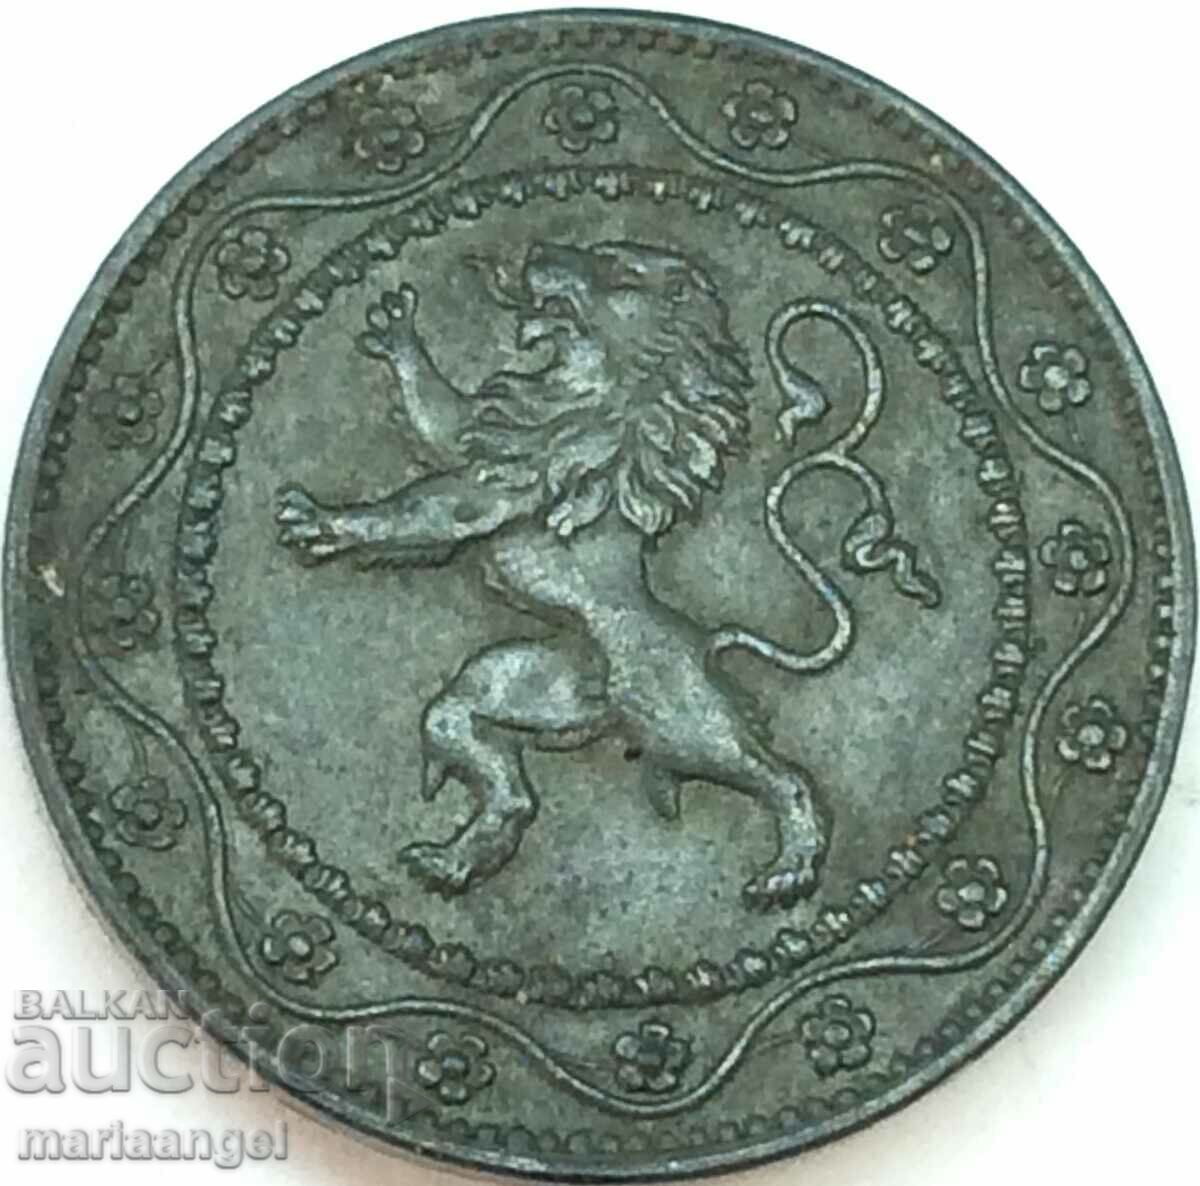 Belgium 25 cents 1916 Lion 26mm zinc